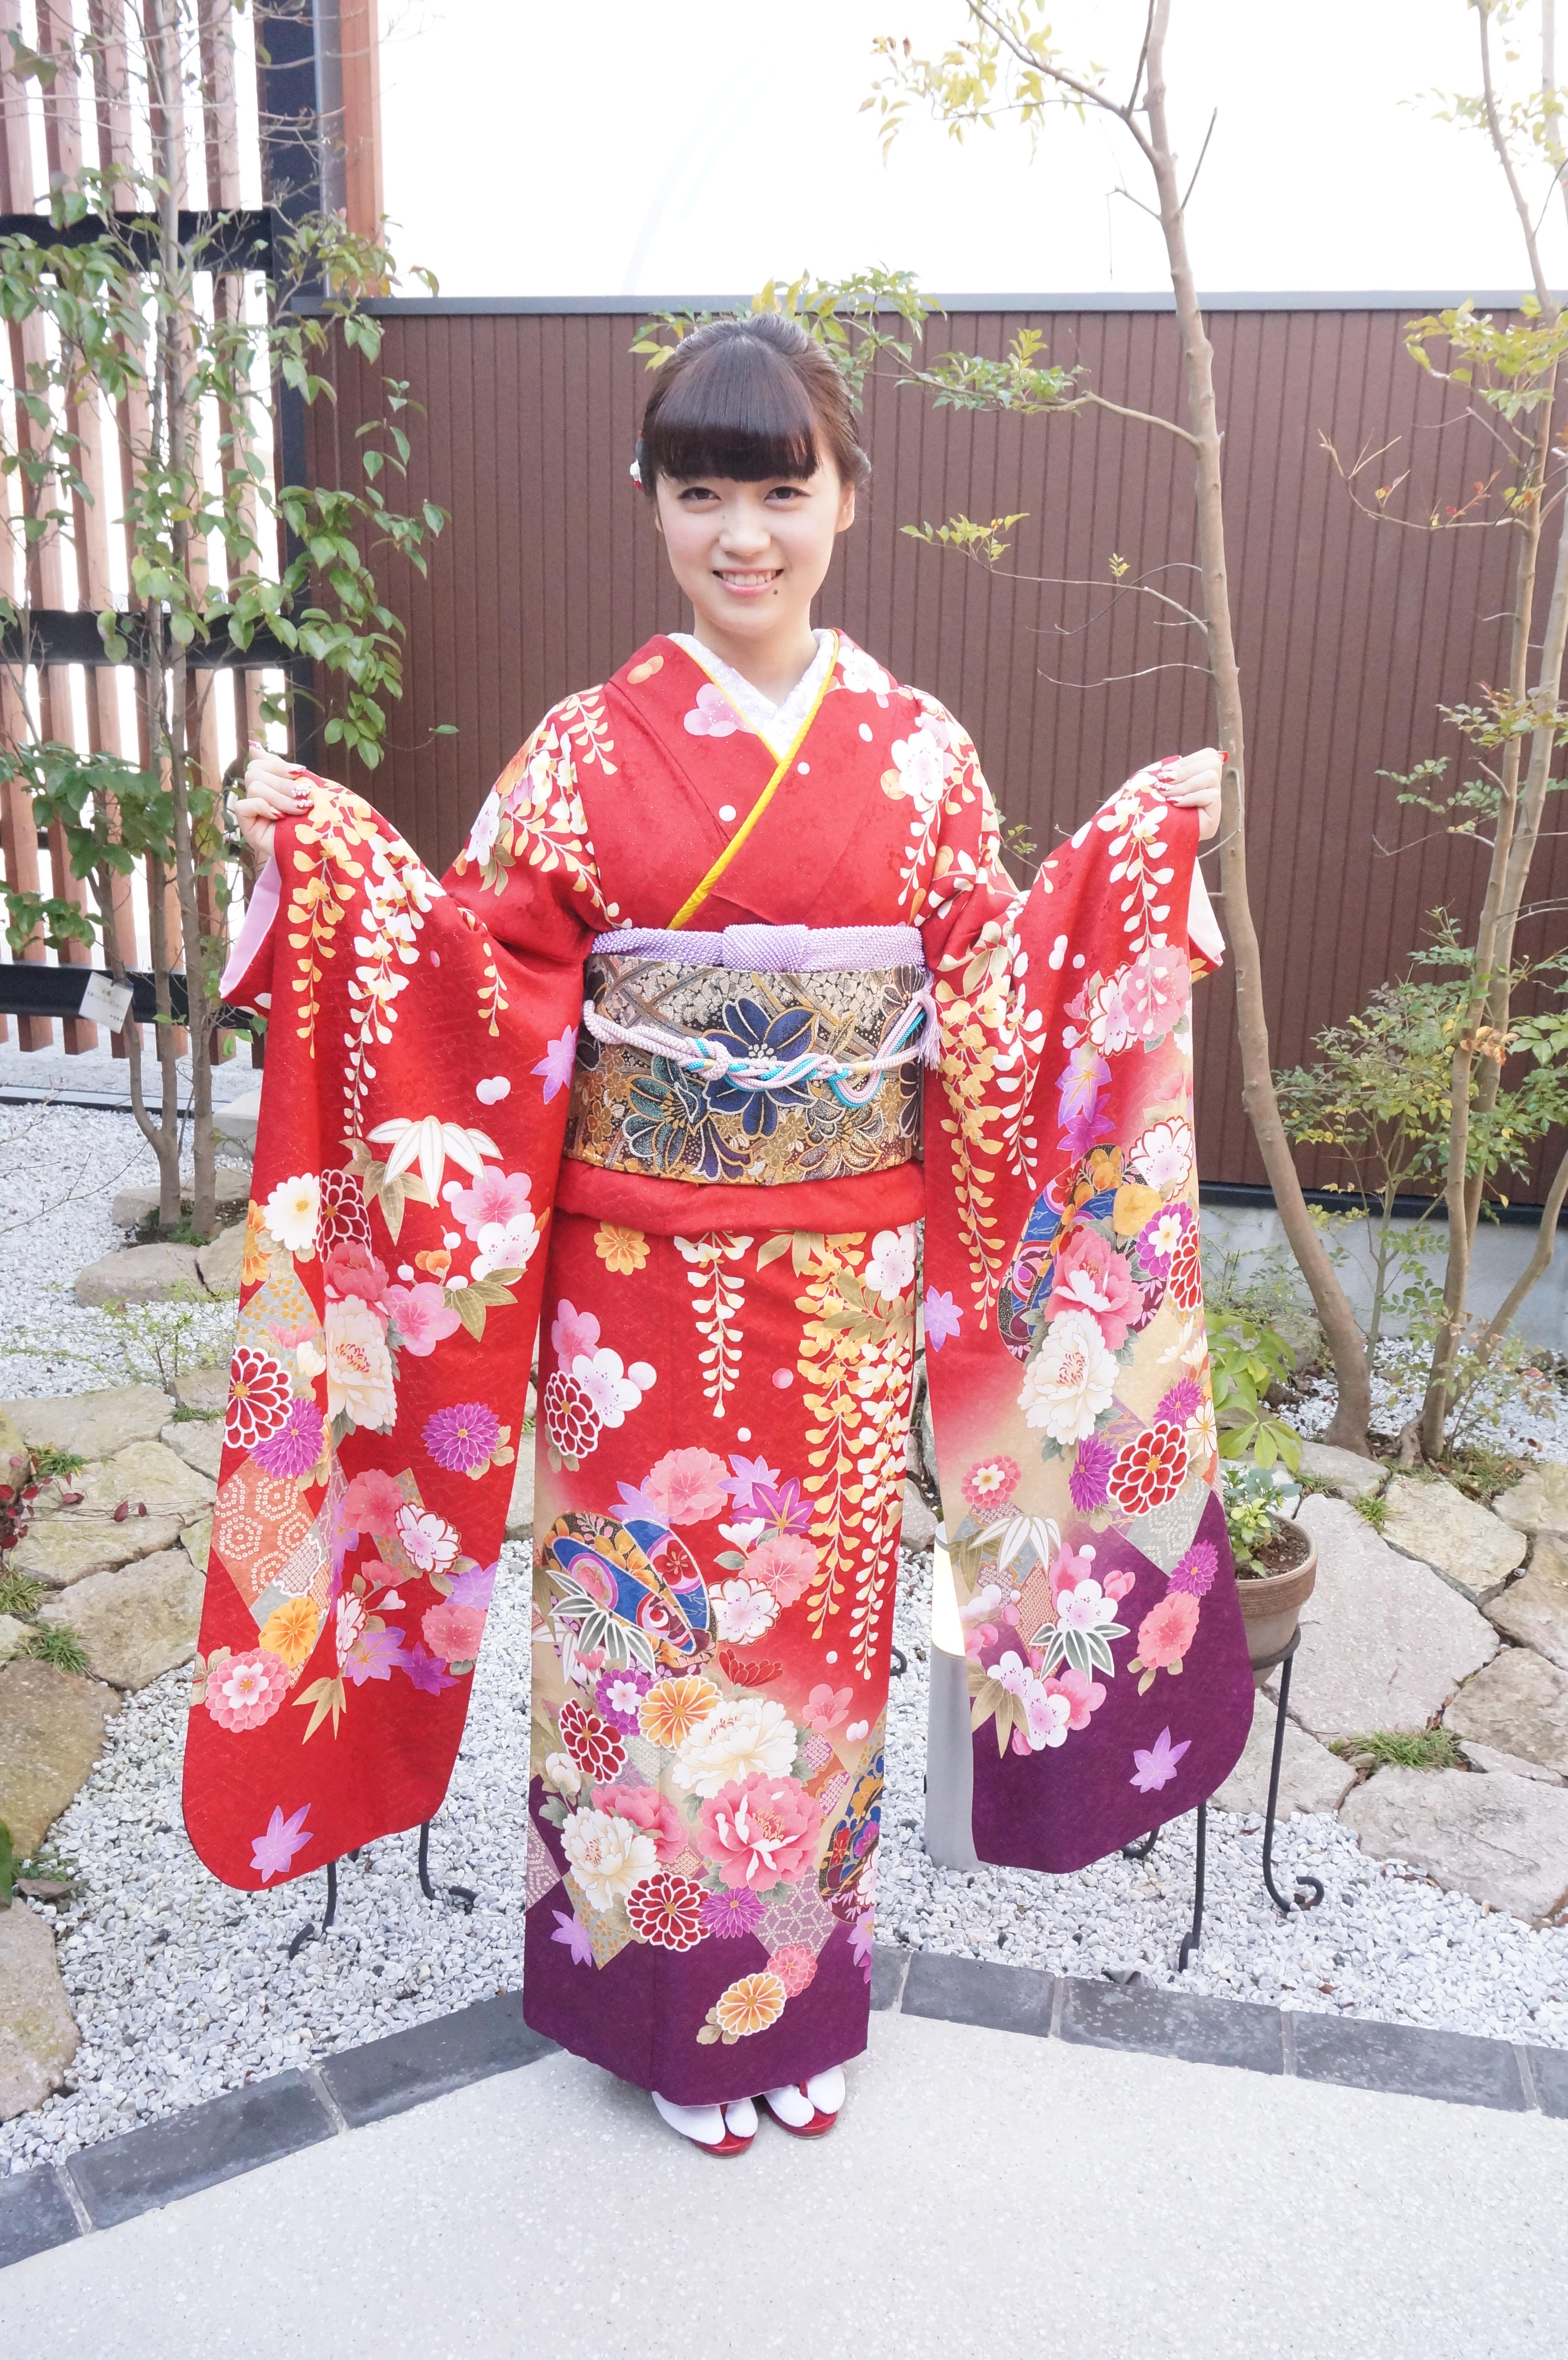 1 10 11 成人式 女の子編 ブログ 熊本の写真館 レンタル衣裳フェスティーボ 成人式 卒業式 七五三 ウェディング